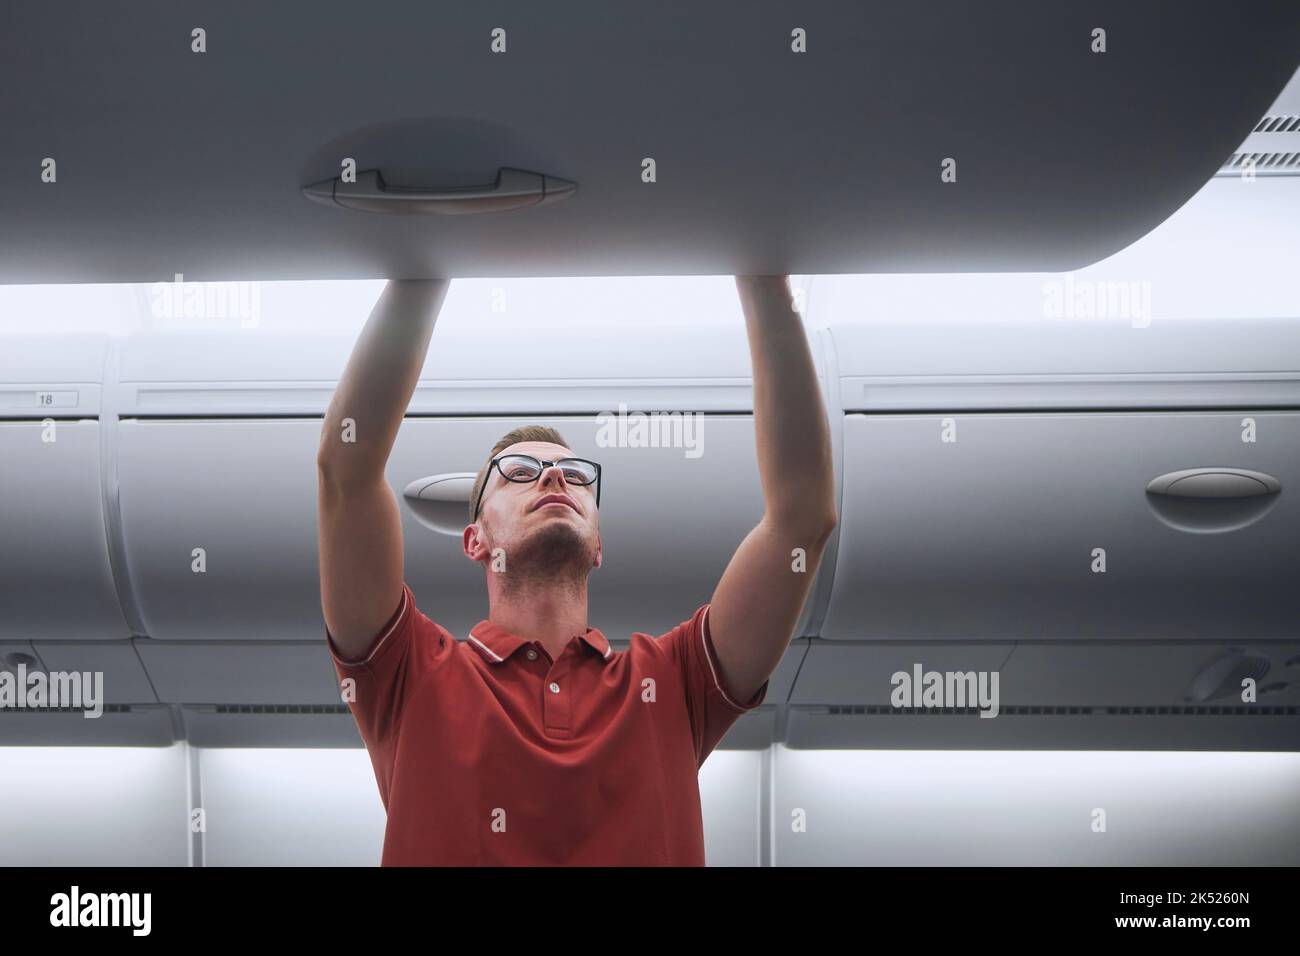 L'uomo viaggia in aereo. Il passeggero mette il bagaglio a mano in armadietti sopra i sedili dell'aereo. Foto Stock